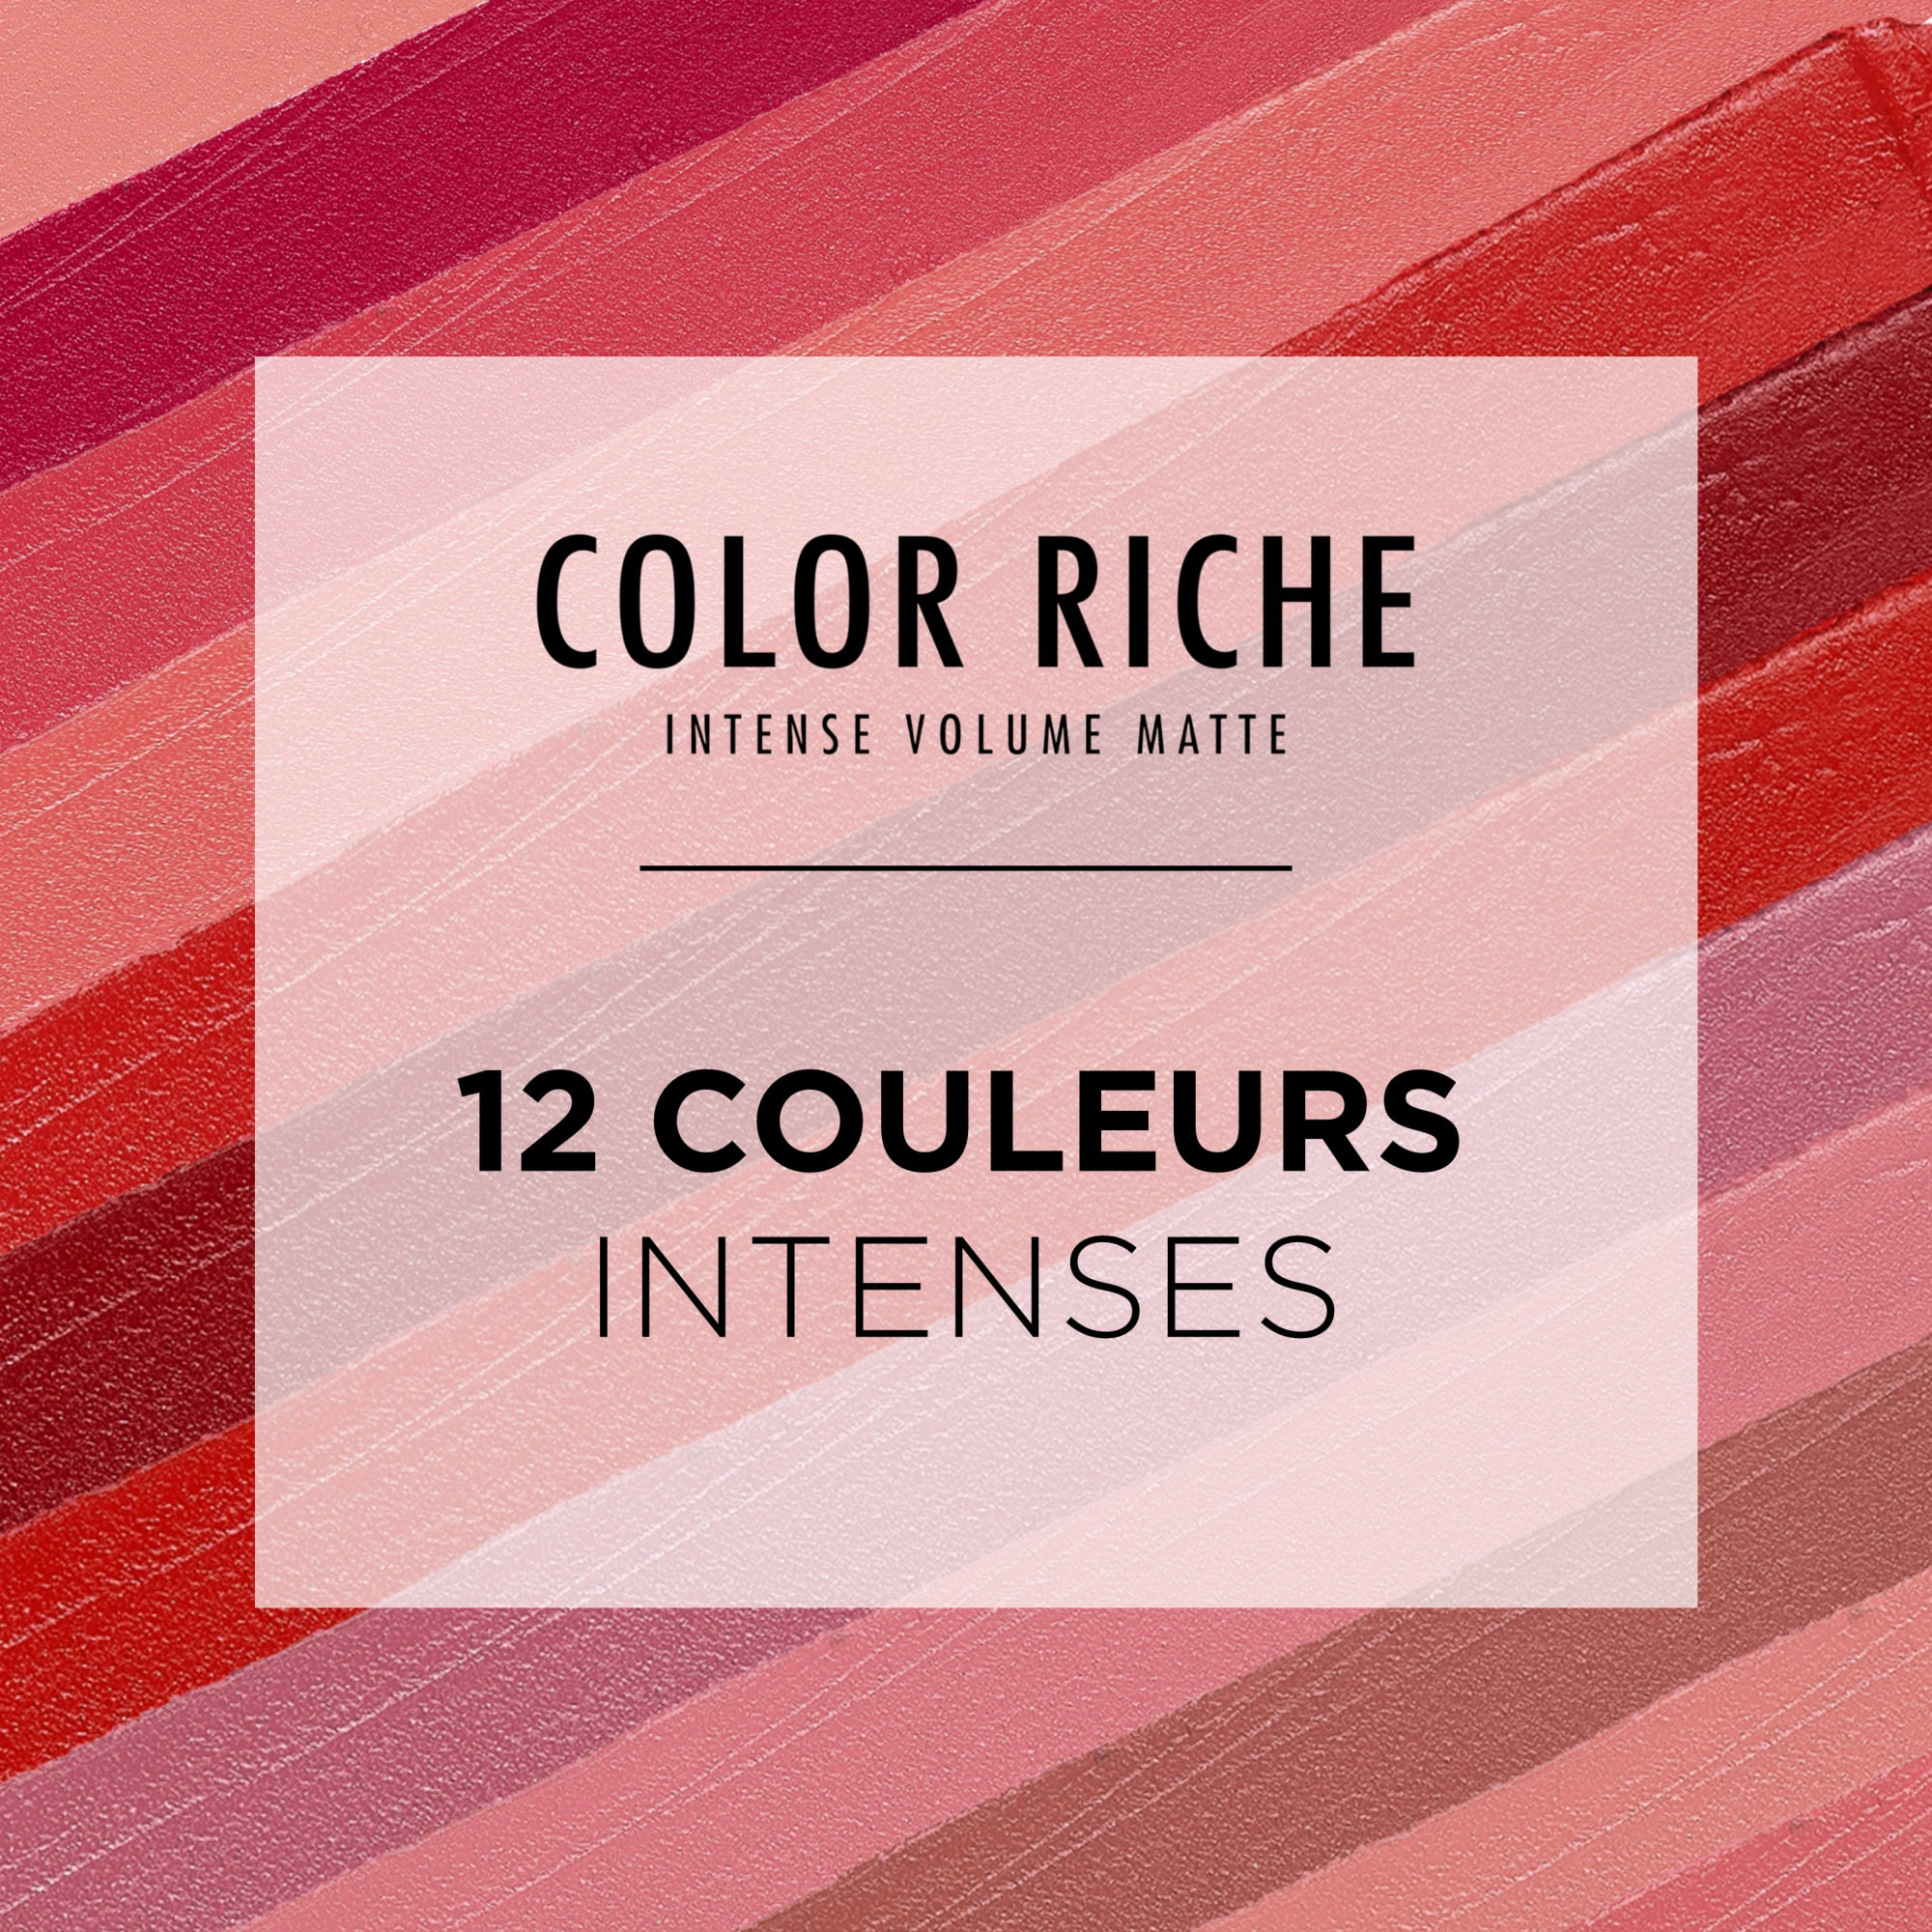 L'Oréal Paris Color Riche Intense Volume Matte 188 Le Rose Activist